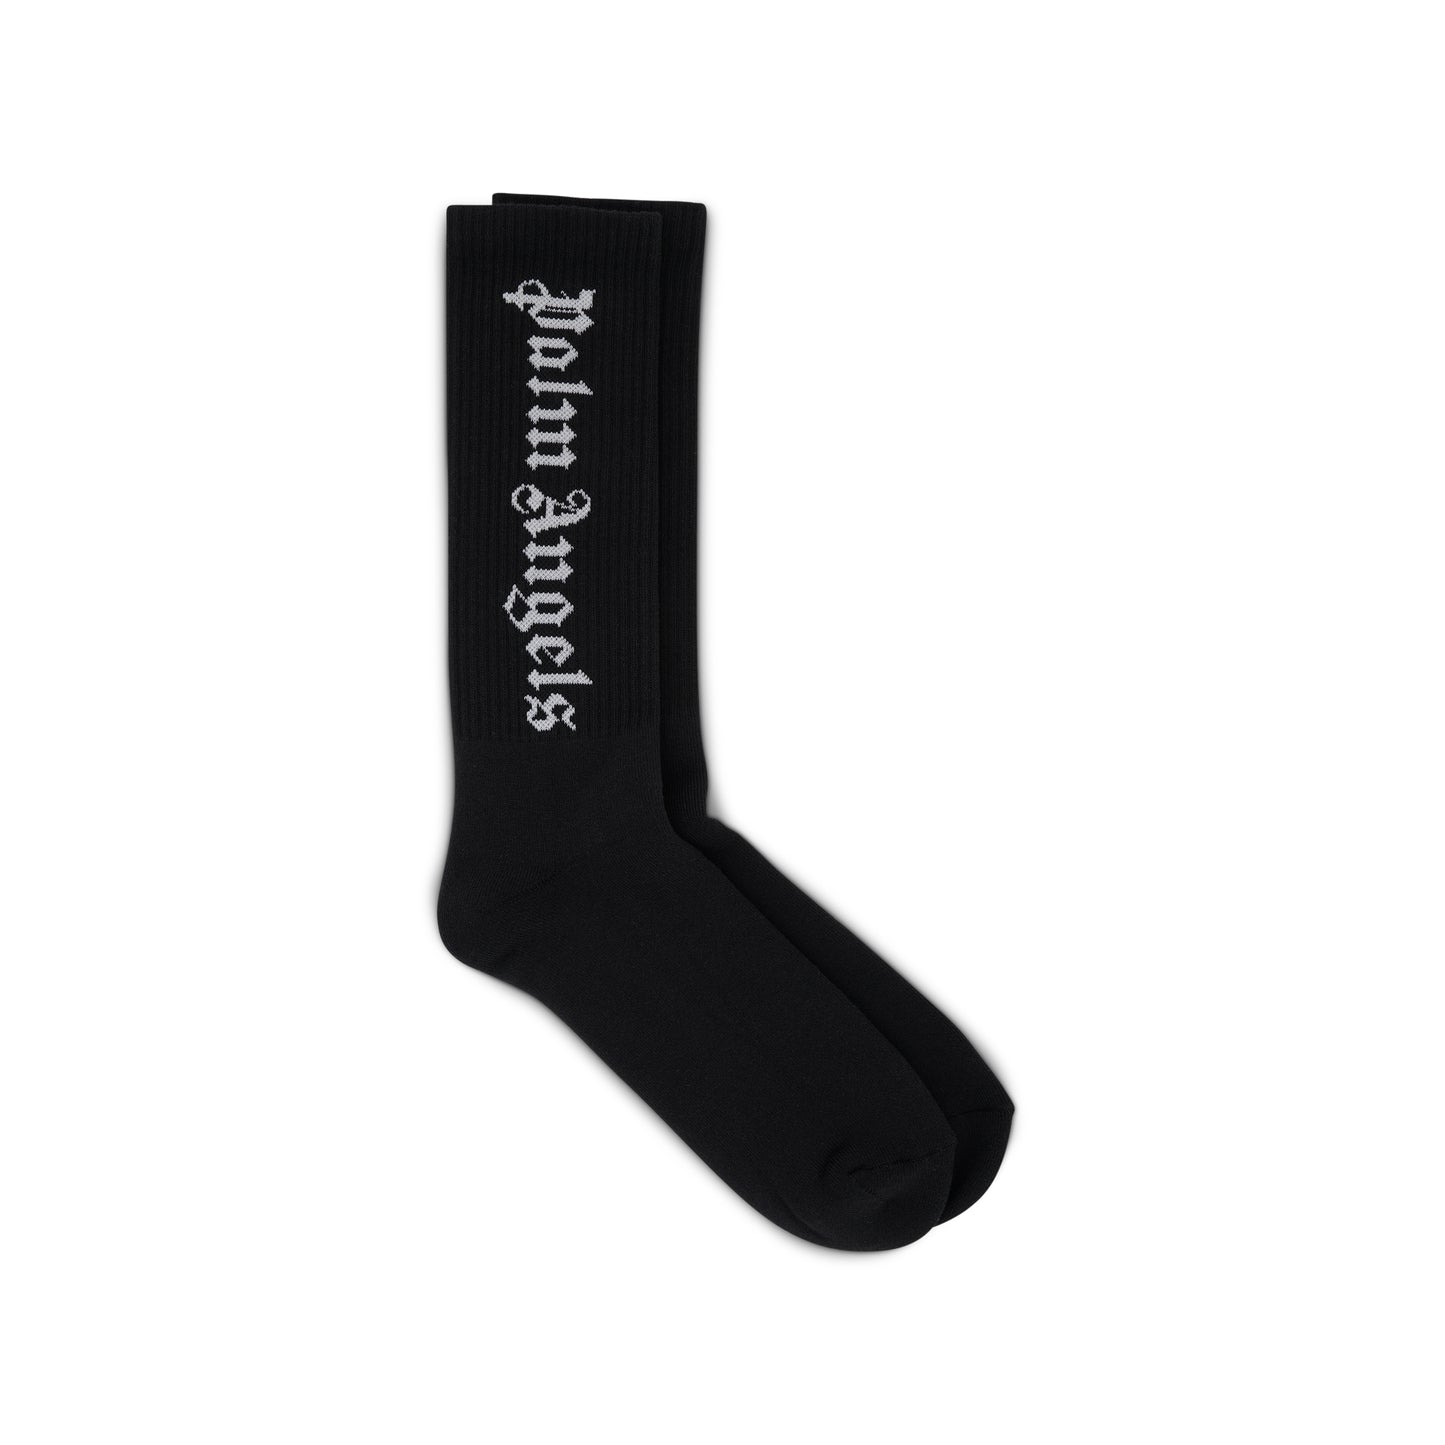 Vertical Logo Socks in Black/White